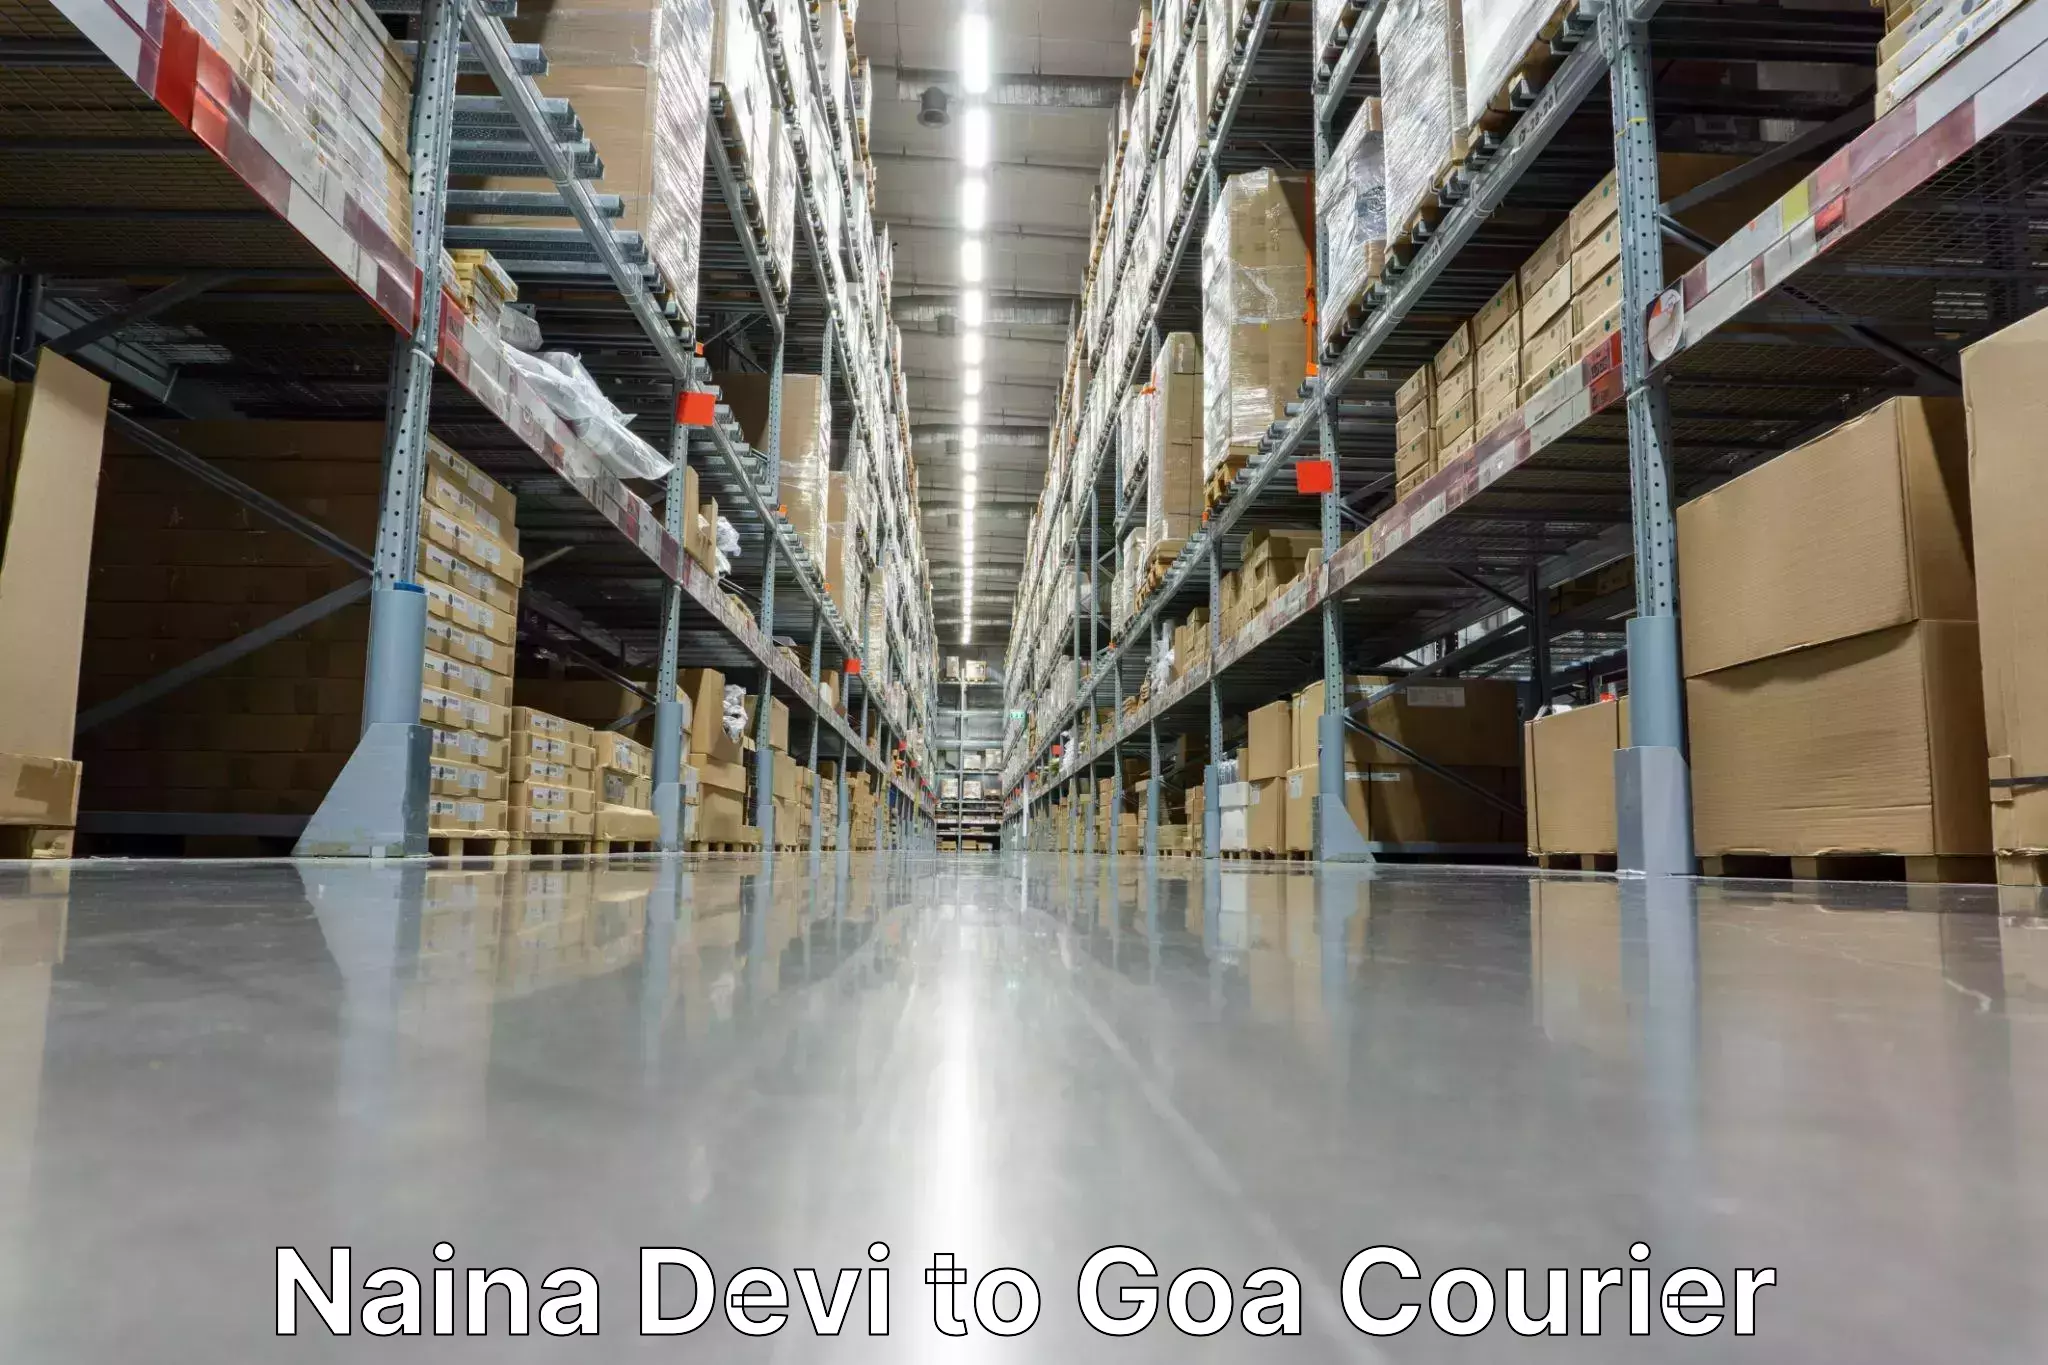 Customer-focused courier Naina Devi to Canacona